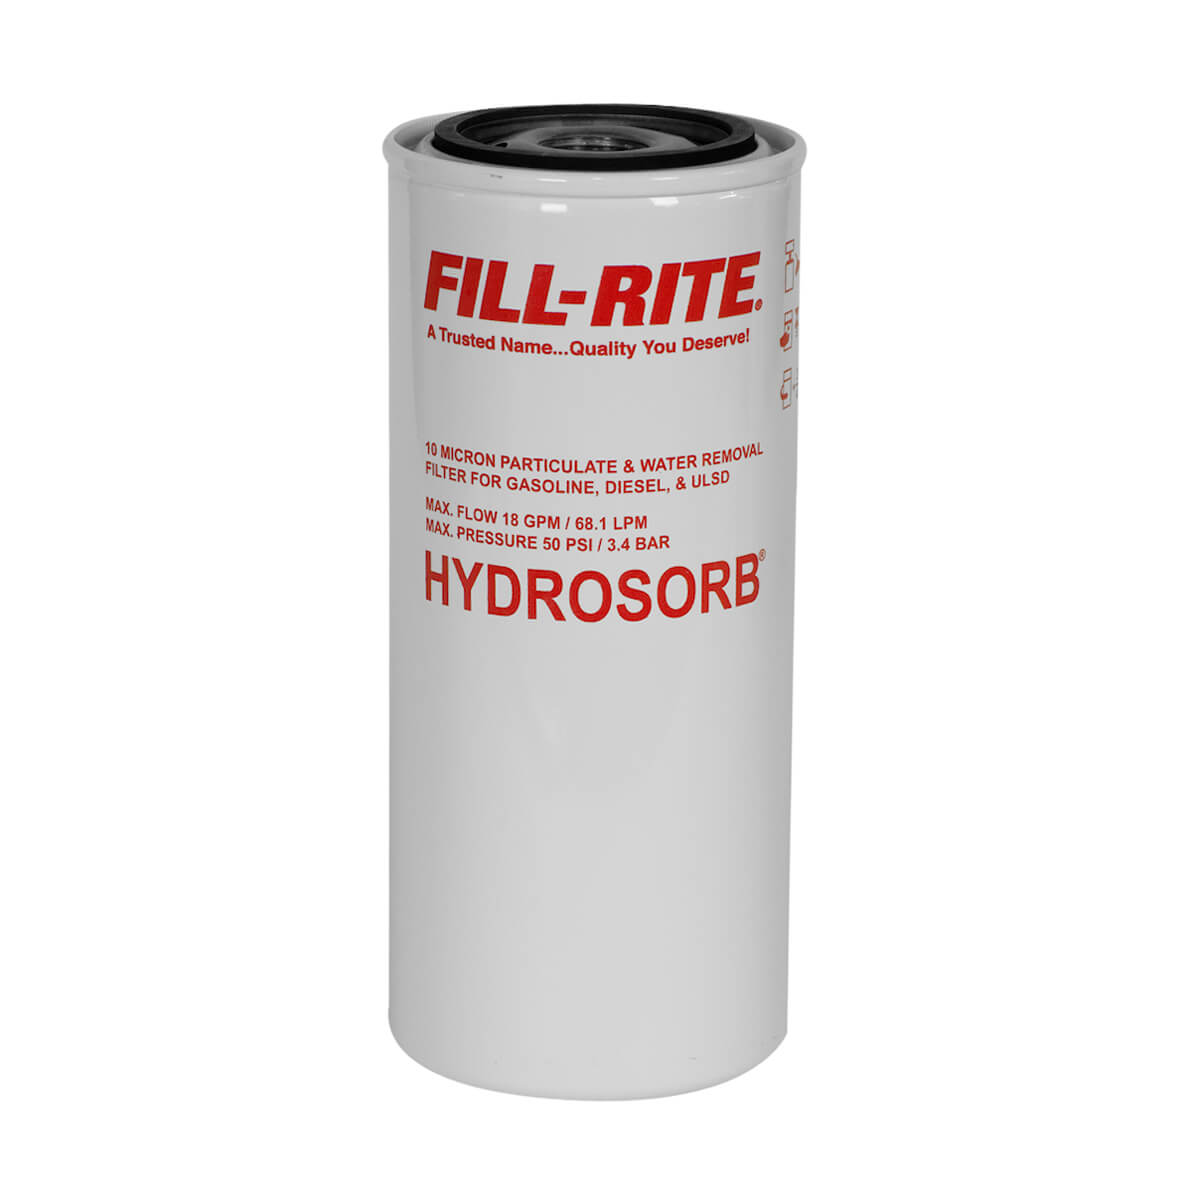 18 GPM Hydrosorb Fuel Filter